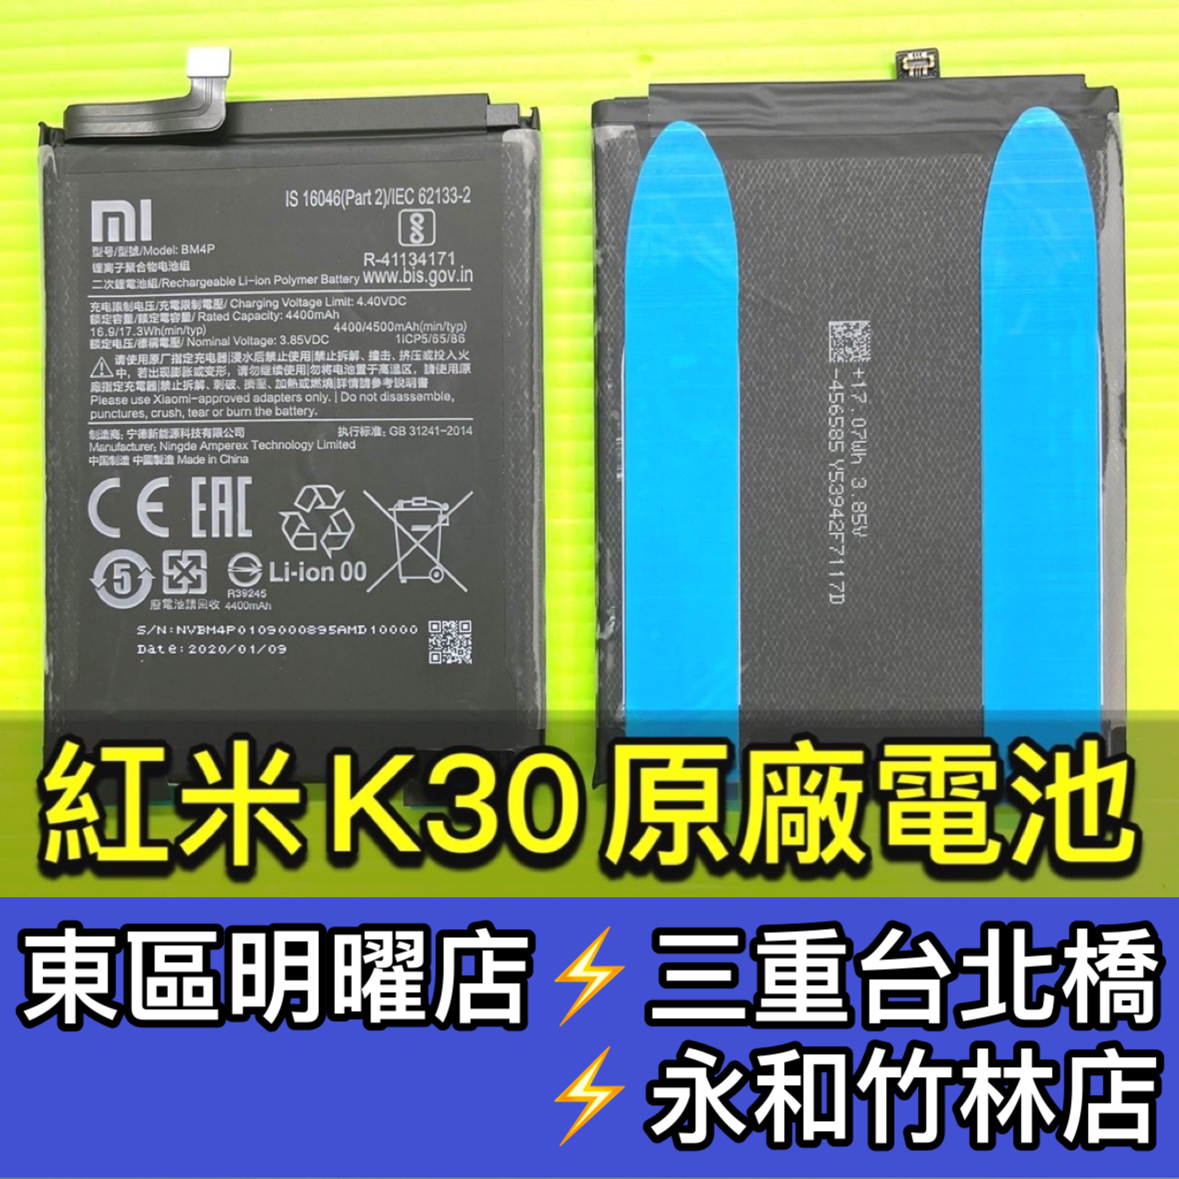 紅米 K30 電池 電池維修 電池更換 紅米k30 換電池